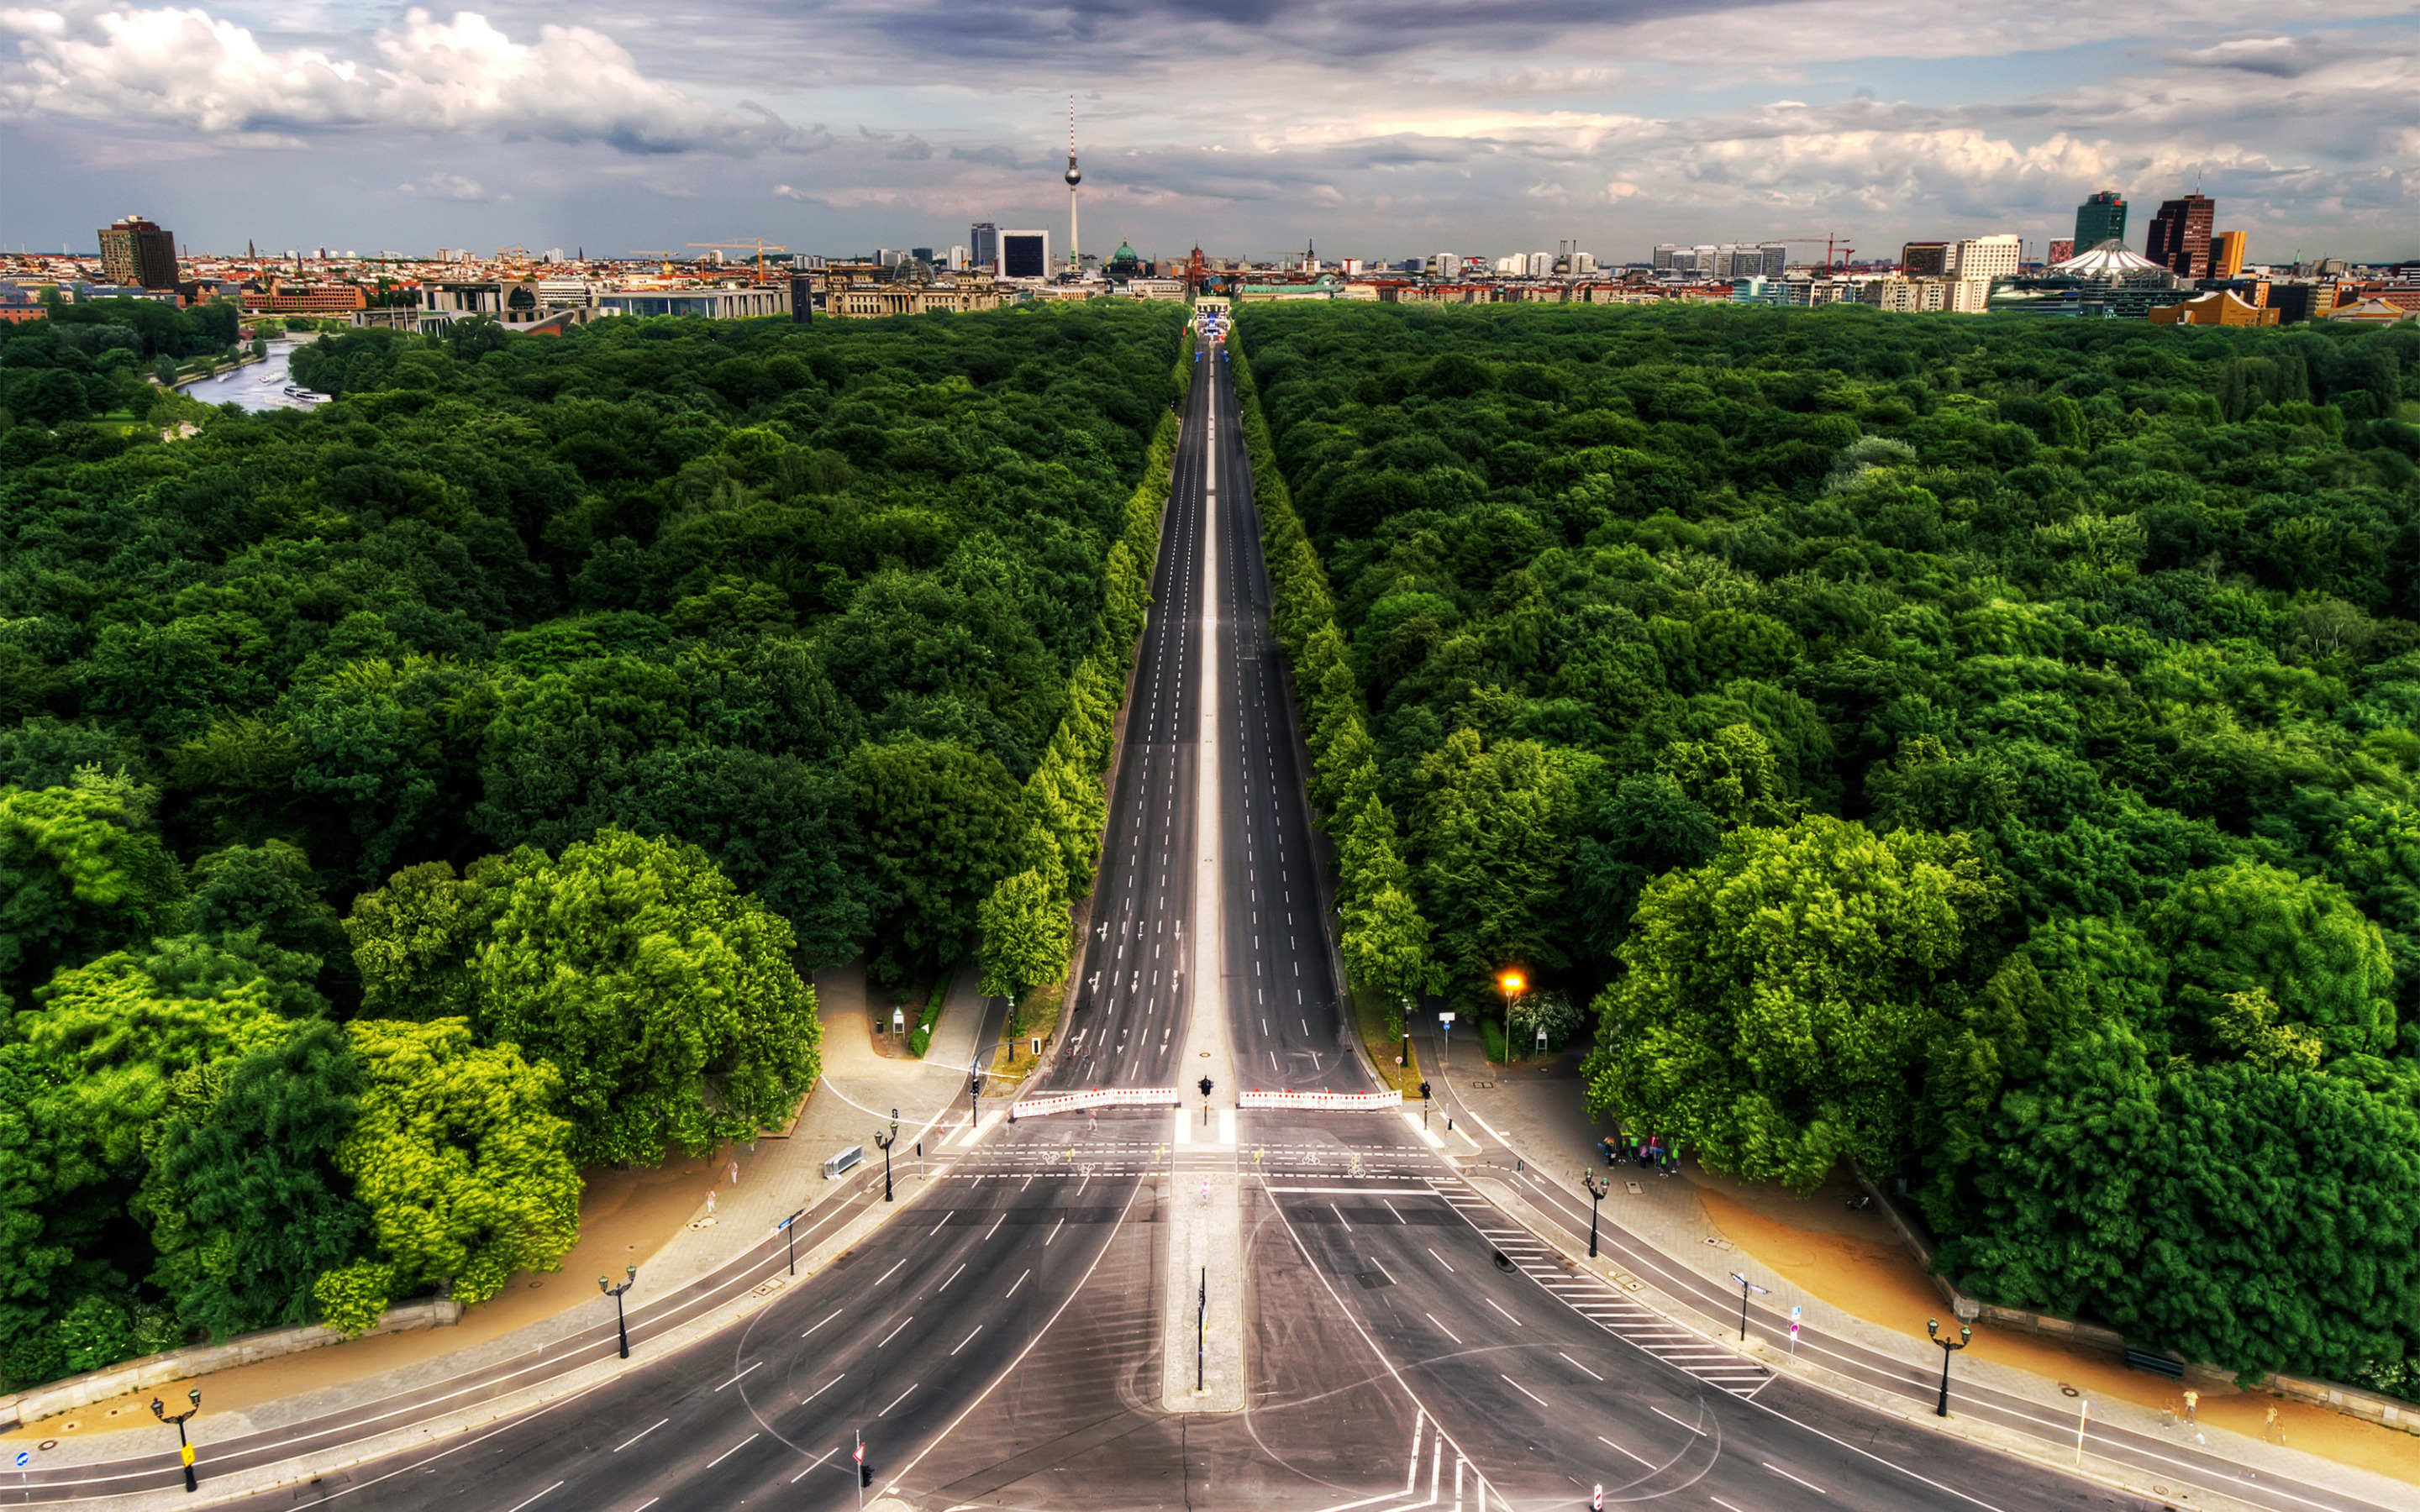 Самая длинная улица в европе. Большой Тиргартен в Берлине. Парк Тиргартен в Берлине. Парк Тиргартен в Берлине вид сверху. Тиргартен в Берлине фото.